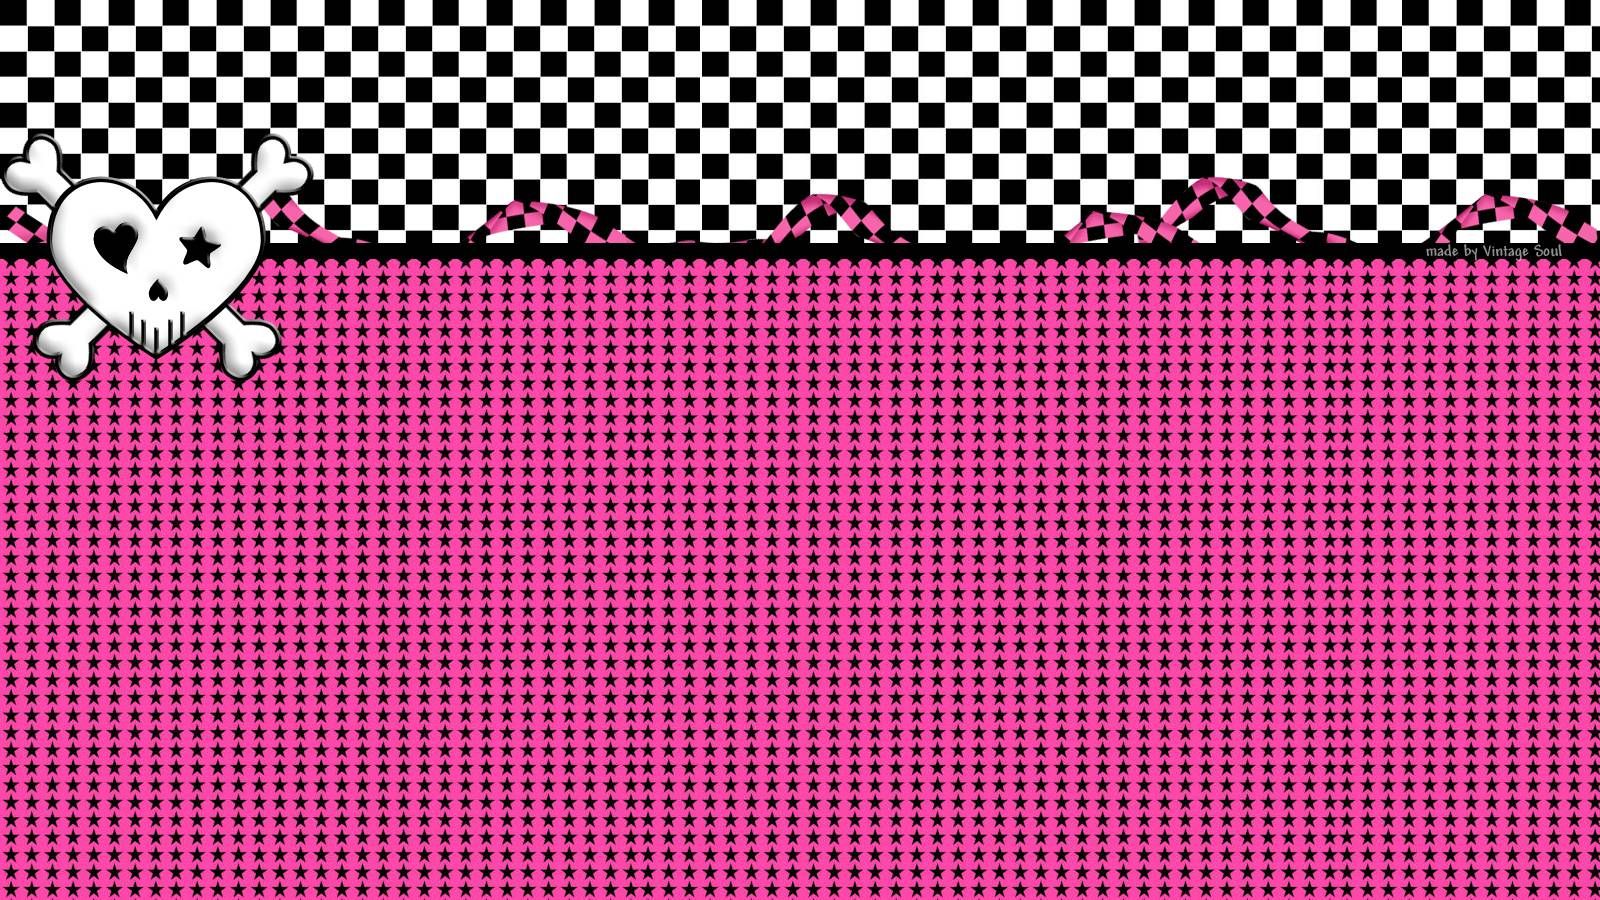 Pink Punk Tumblr Wallpapers